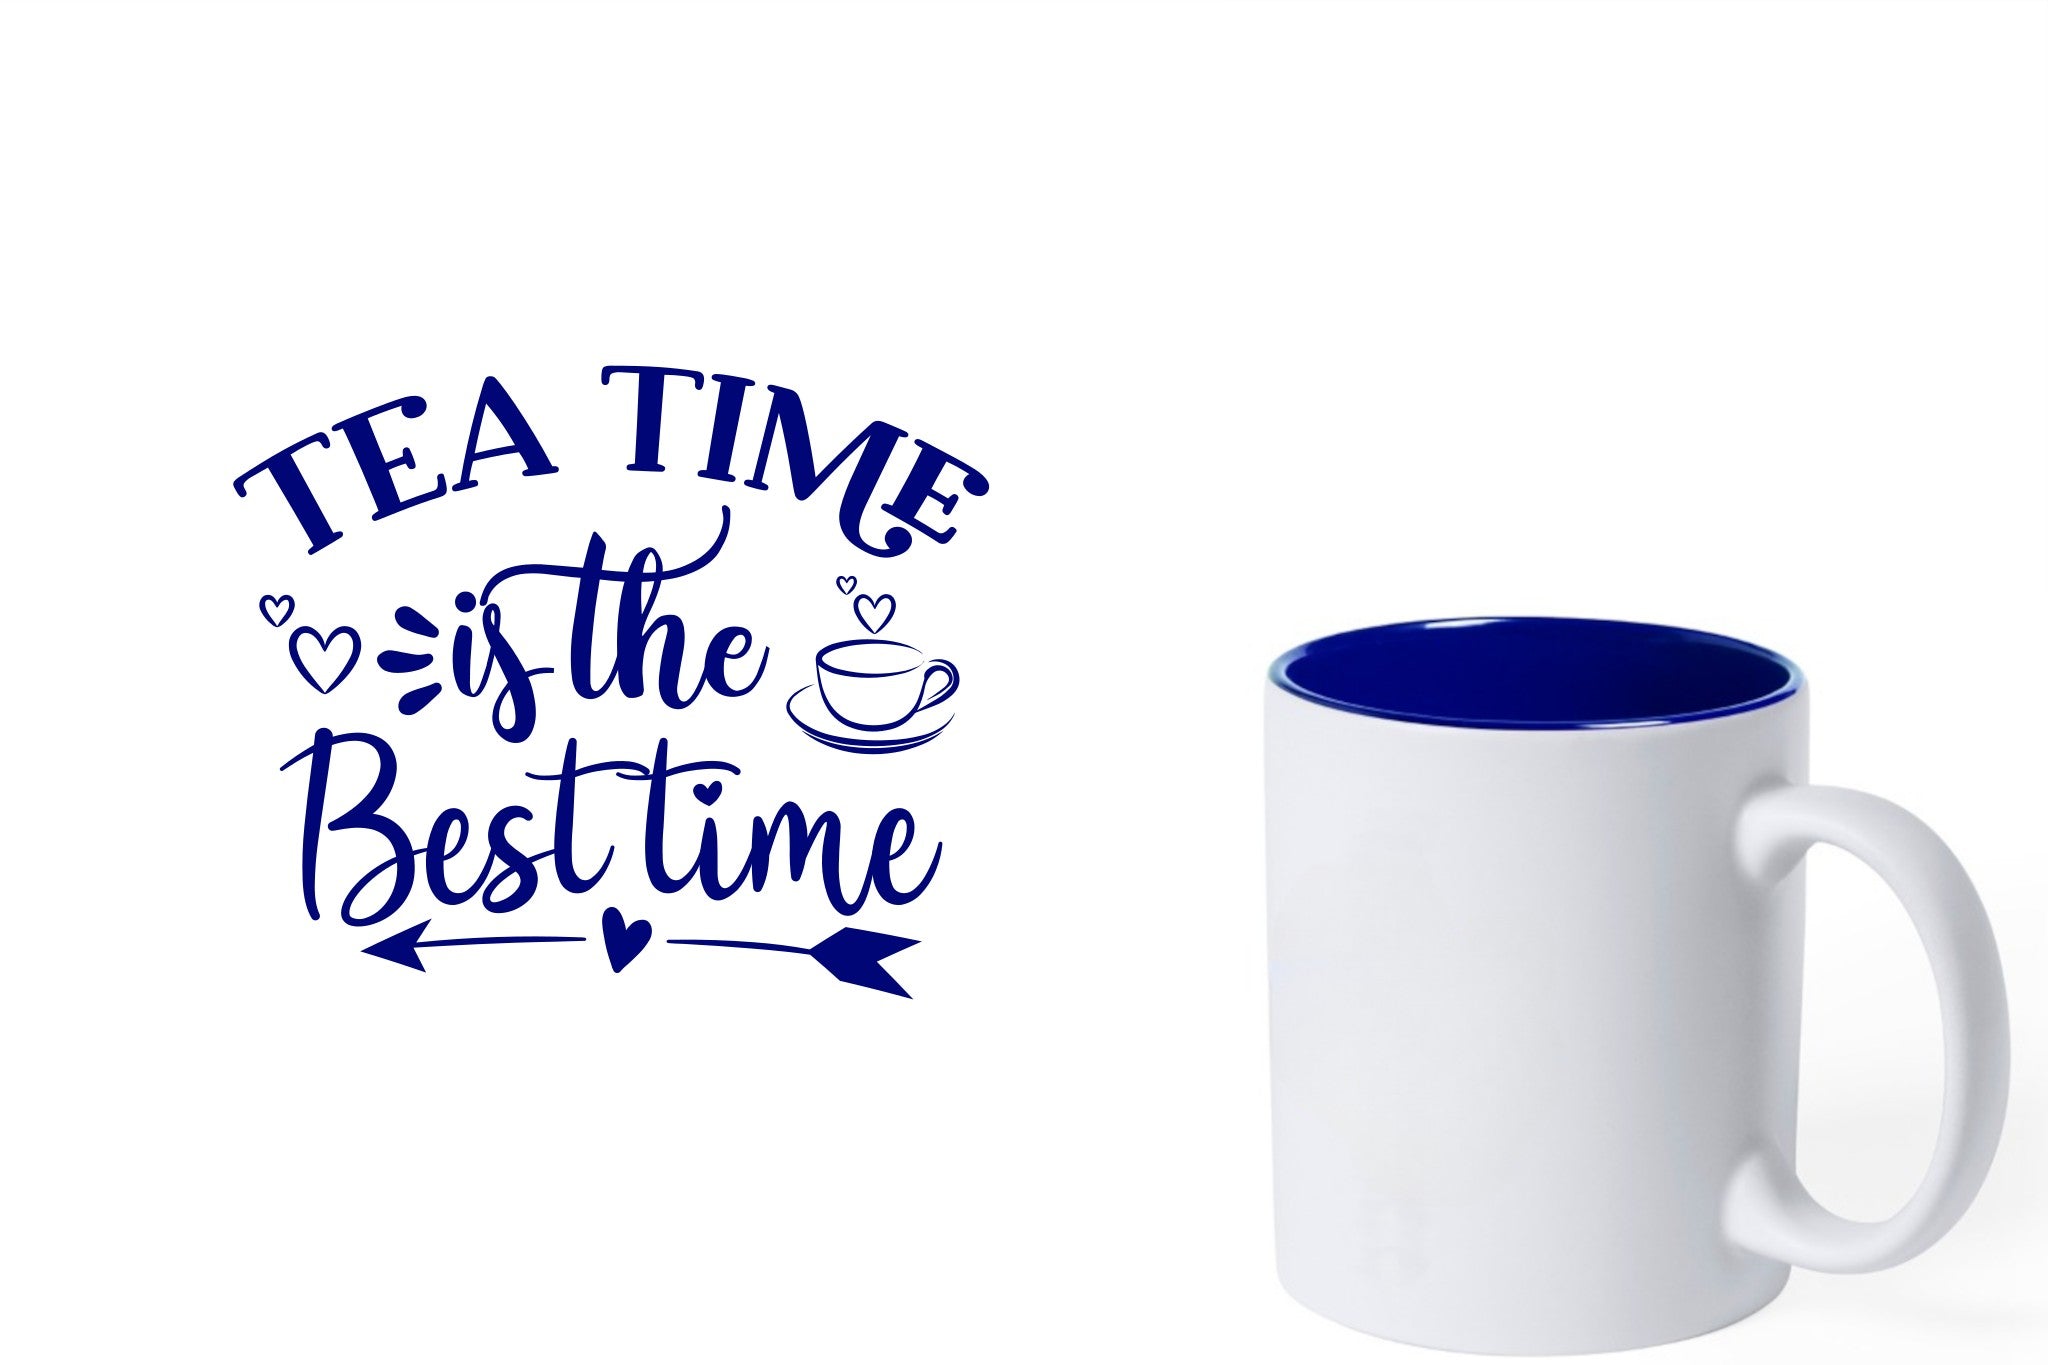 witte keramische mok met blauwe gravure  'Tea time is the best time'.